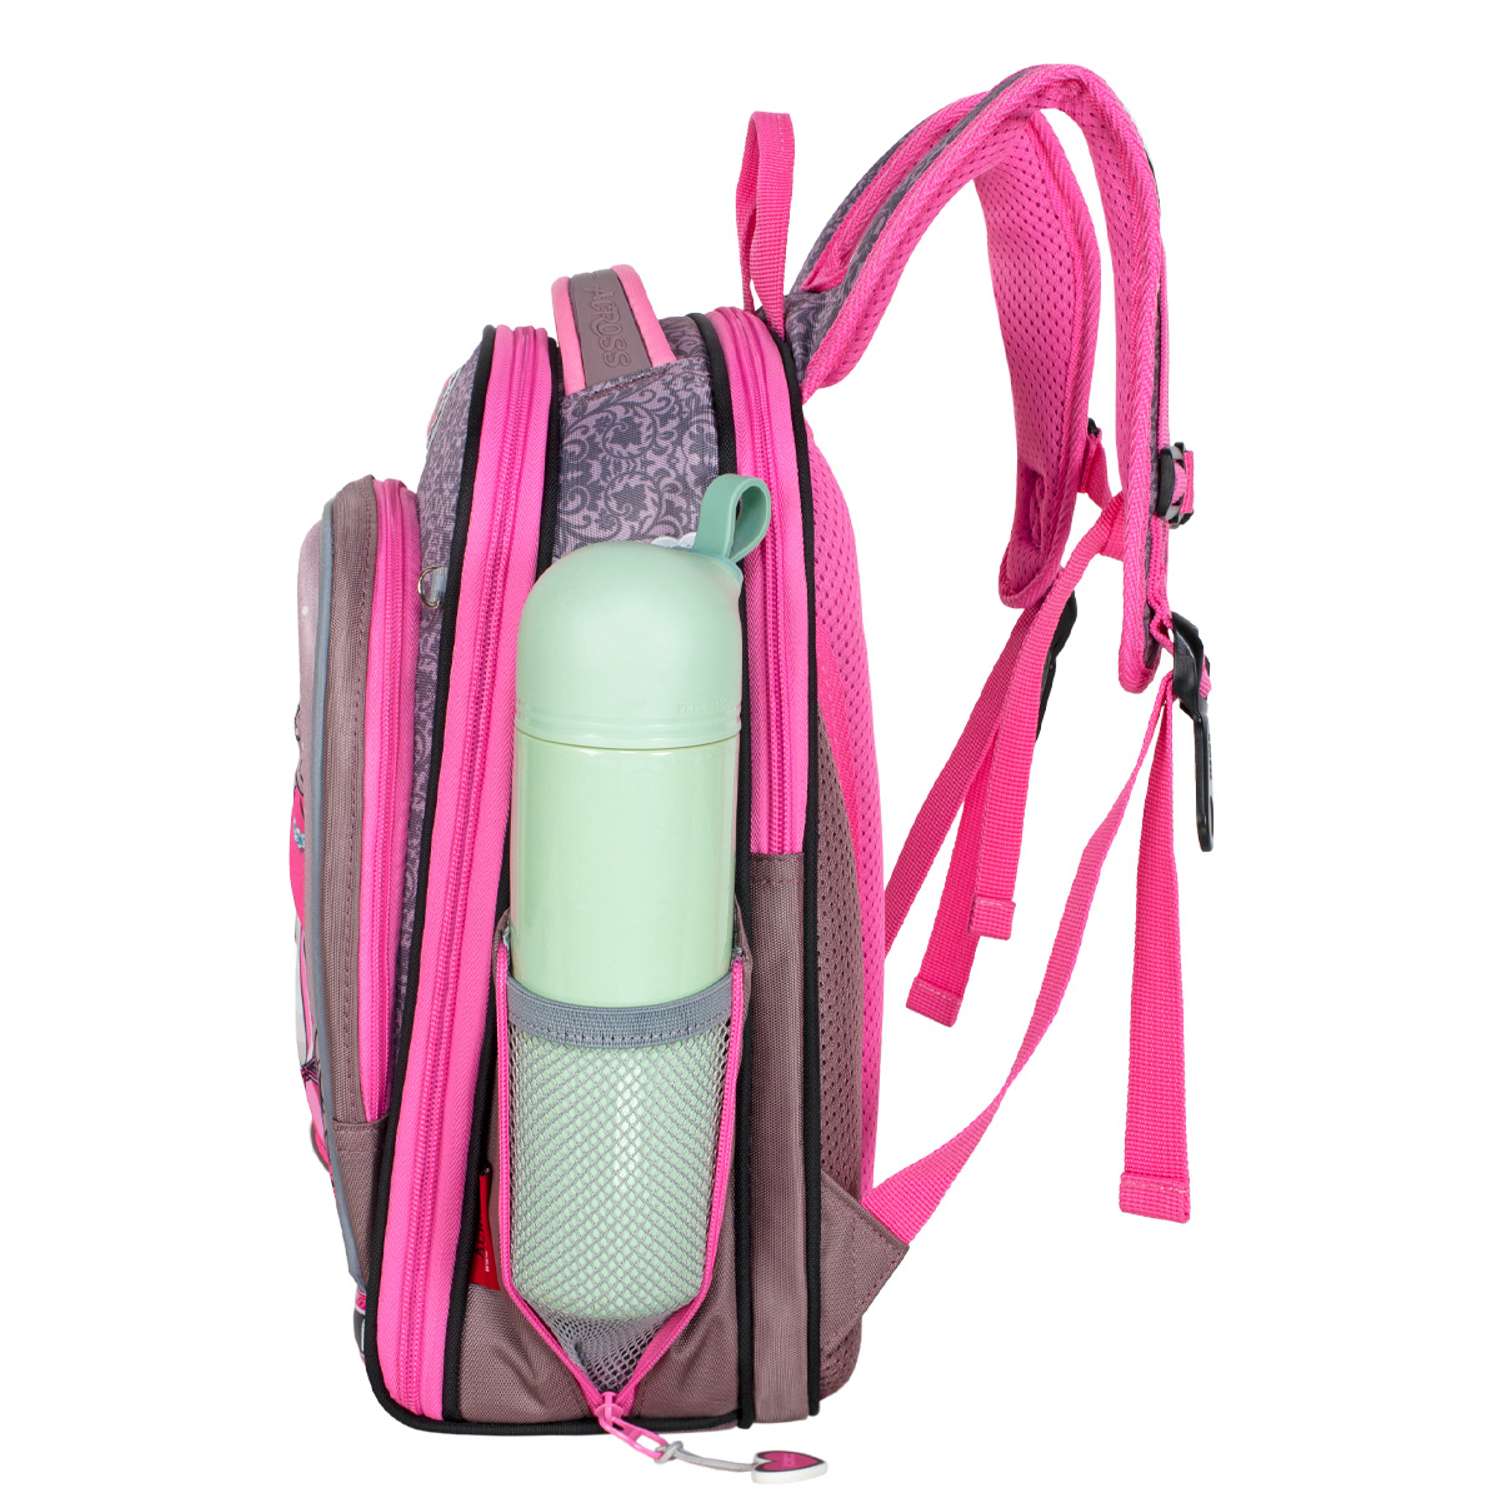 Рюкзак школьный с наполнением ACROSS HK22-8 мешок д/обуви + брелок - фото 4